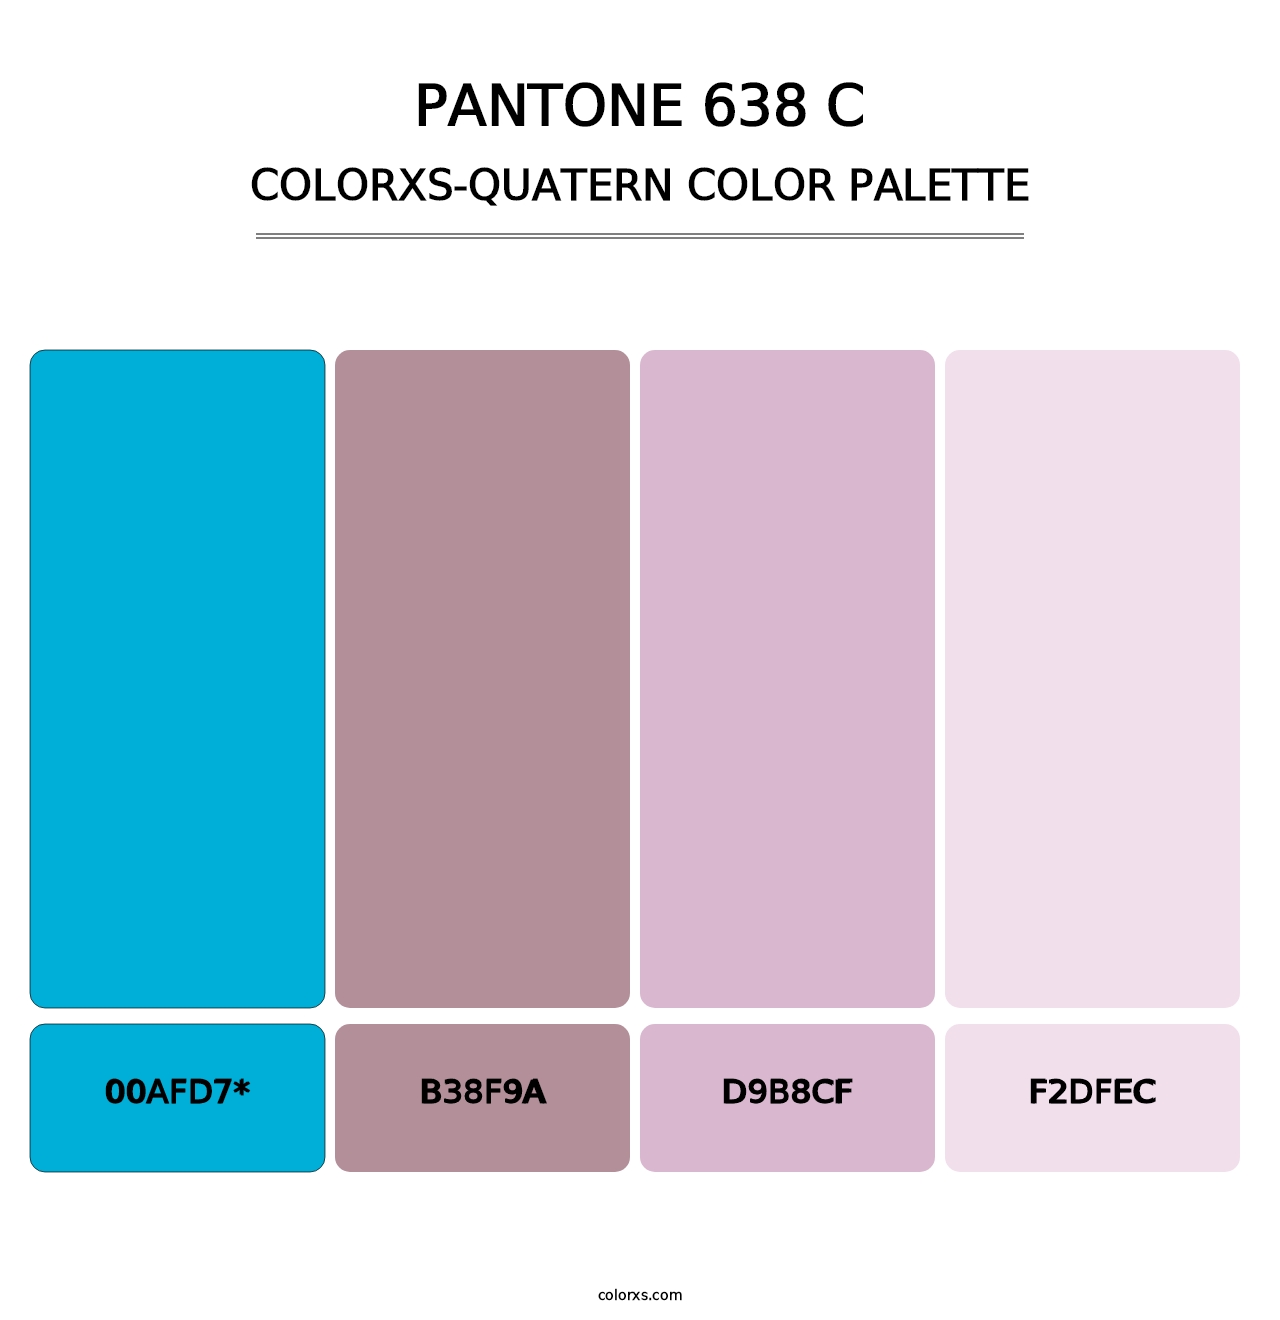 PANTONE 638 C - Colorxs Quatern Palette